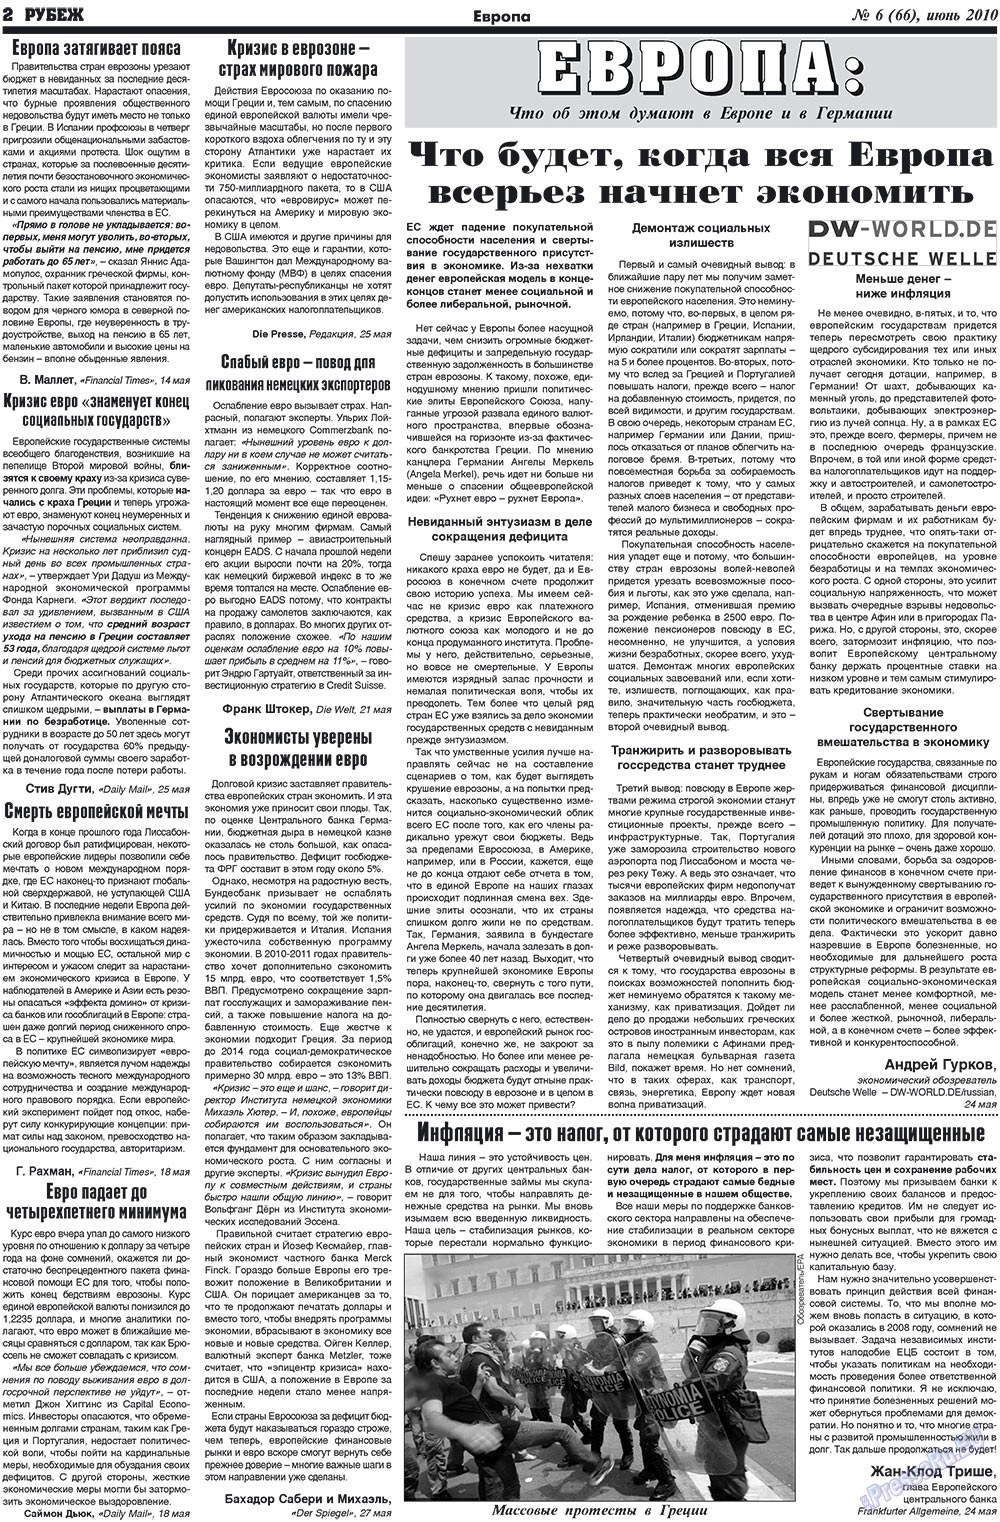 Рубеж (газета). 2010 год, номер 6, стр. 2